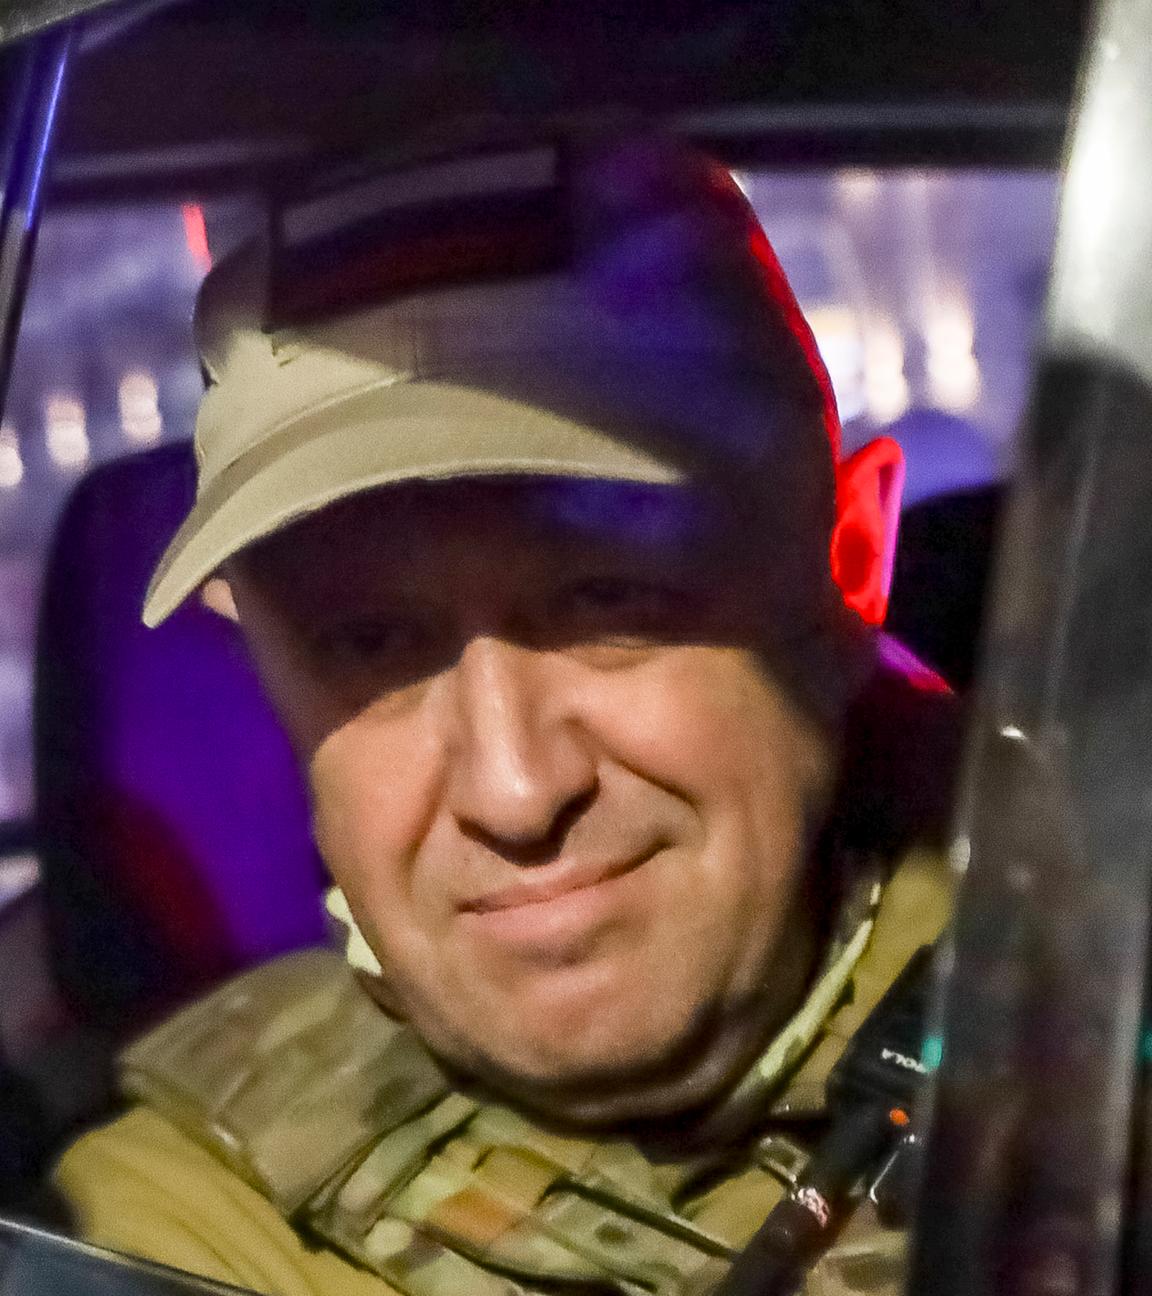 Russland, Rostow am Don: Jewgeni Prigoschin blickt aus einem Militärfahrzeug